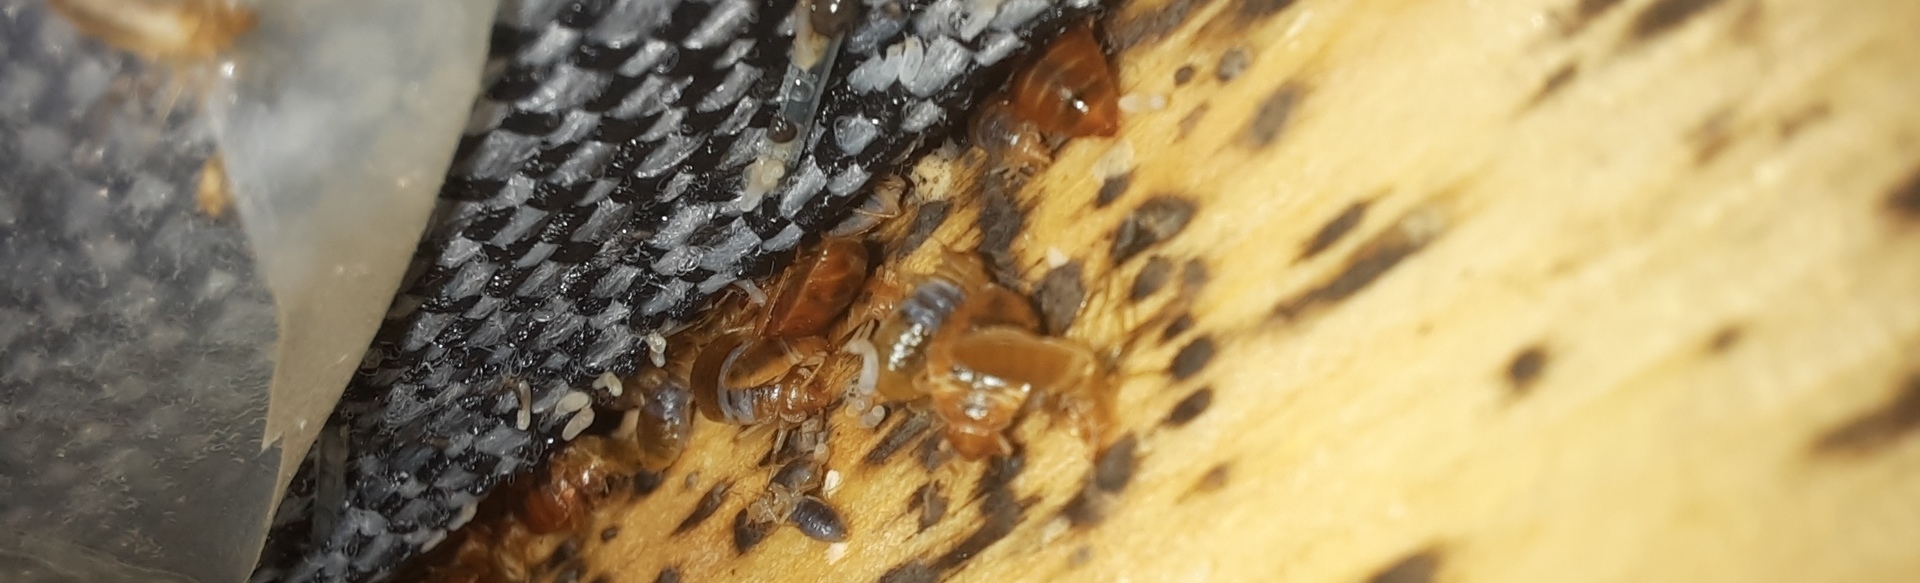 bedbugs on wood